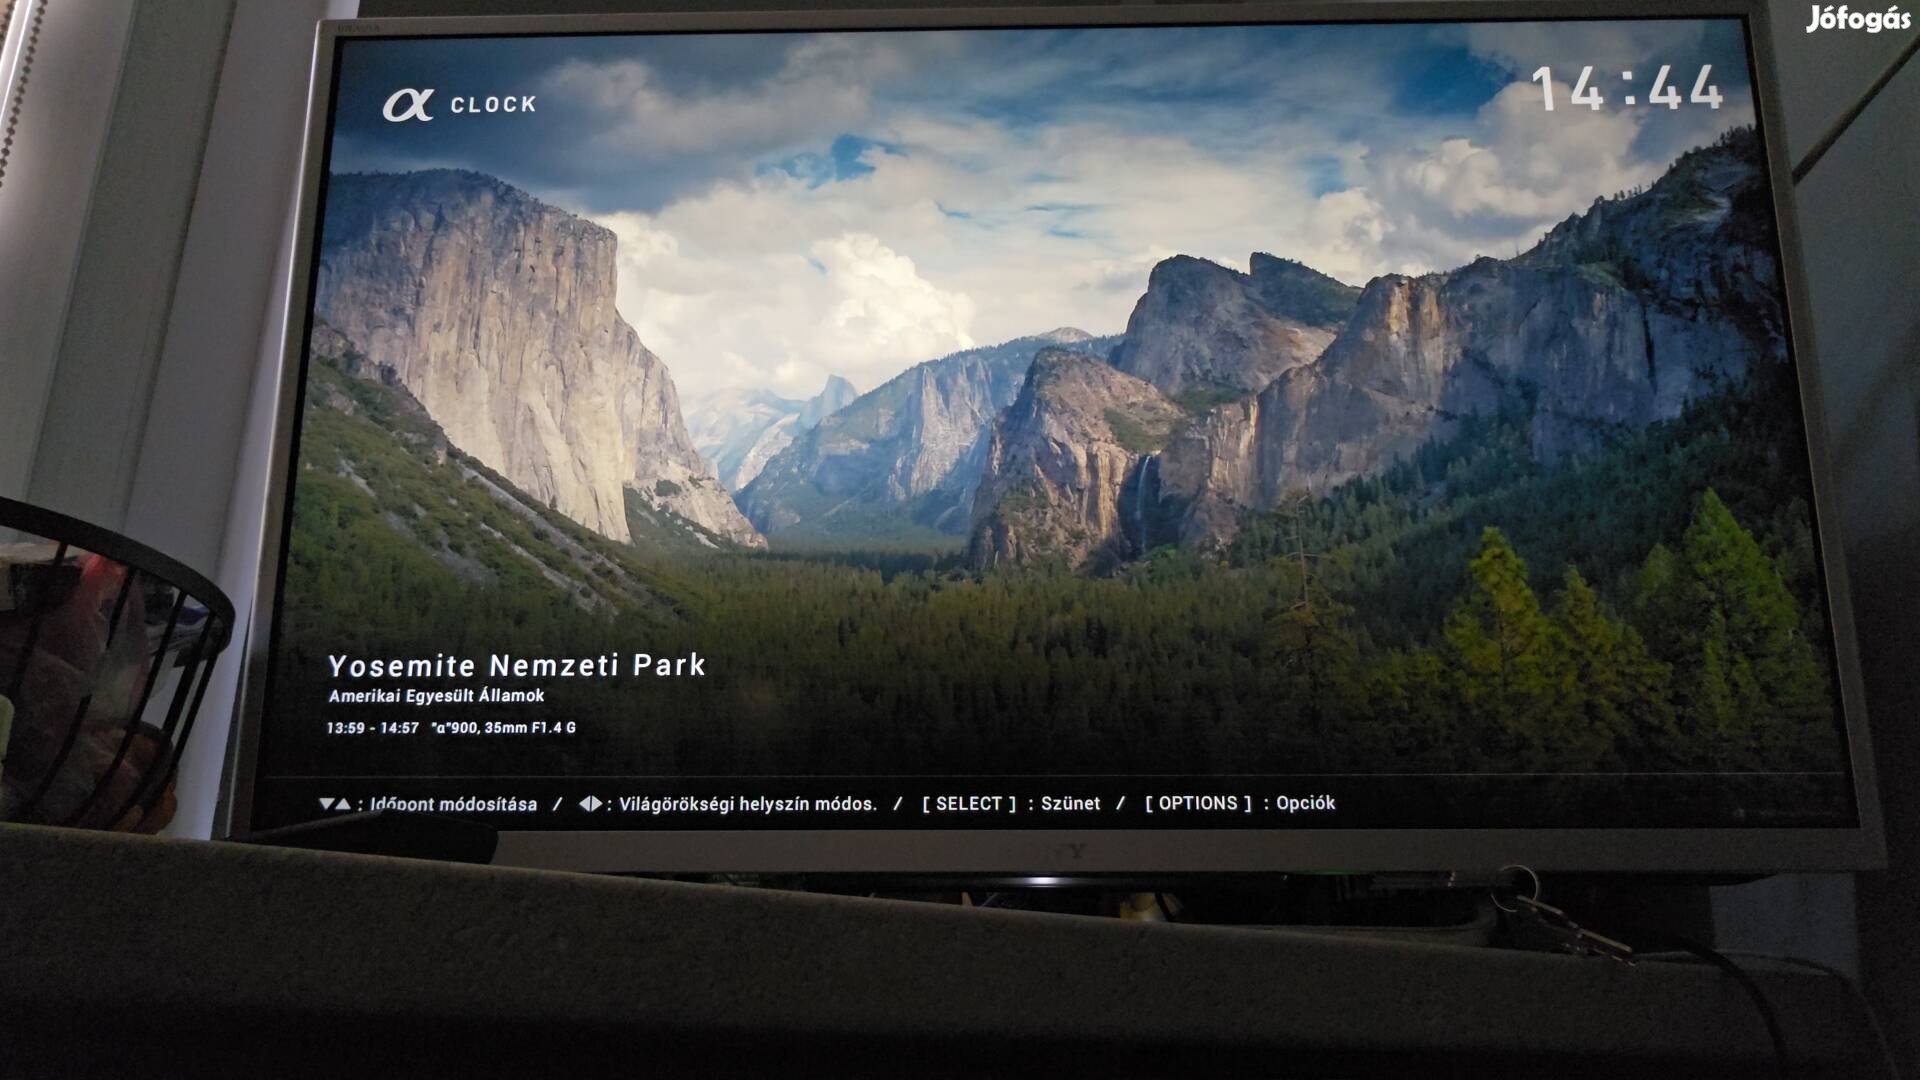 Sony Kdl- 32W706B Smart tv 2014